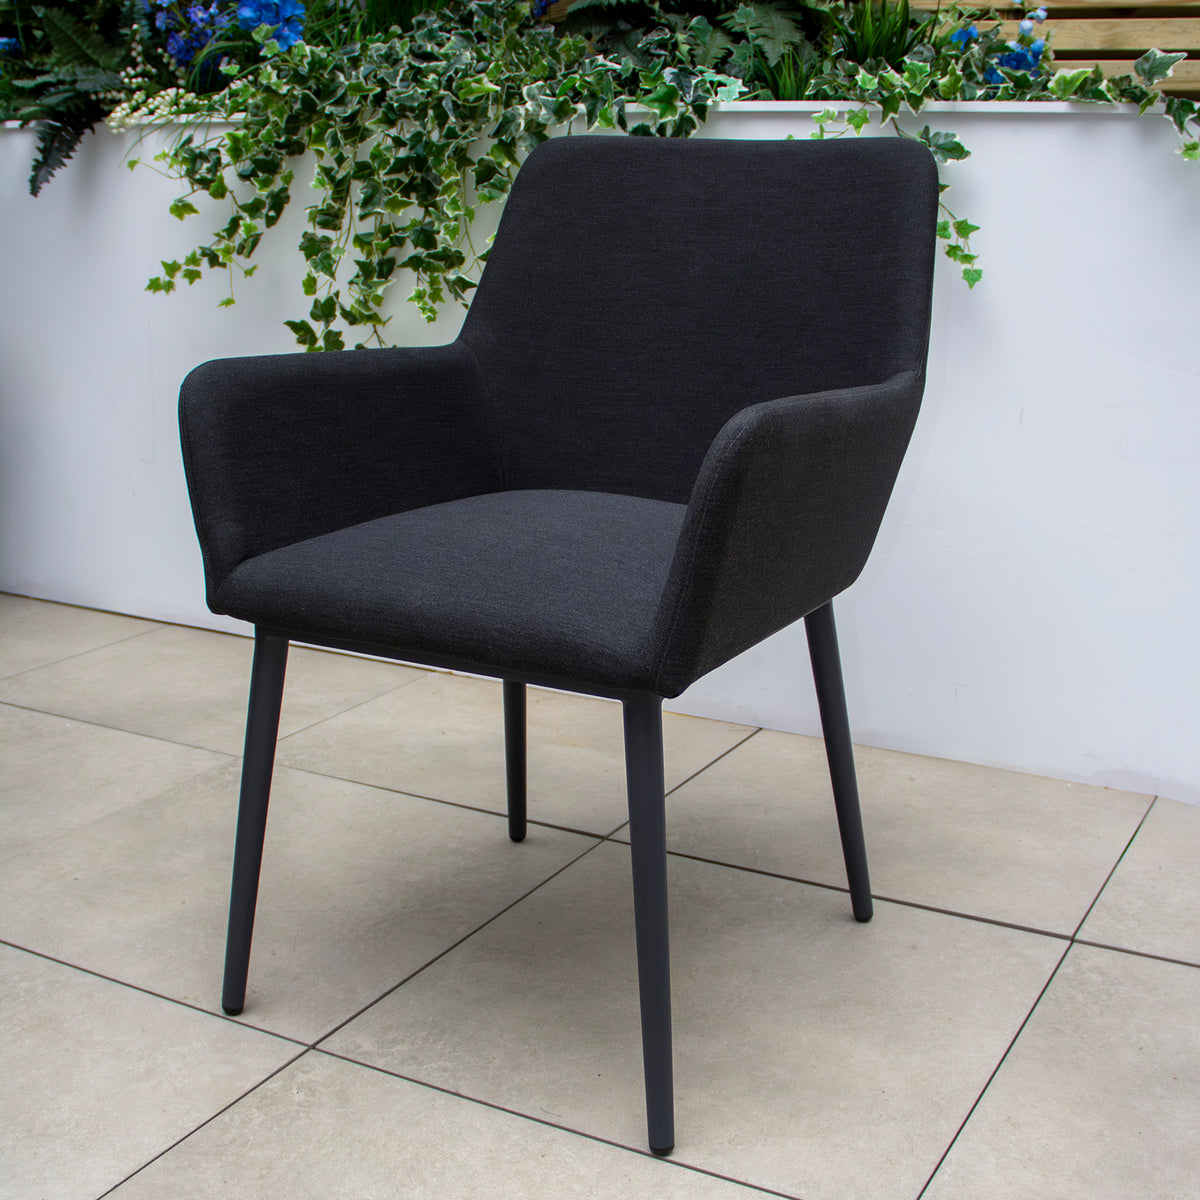 Bracken Outdoors Milano 6 Seat Rectangular Fabric Garden Furniture Dining Set